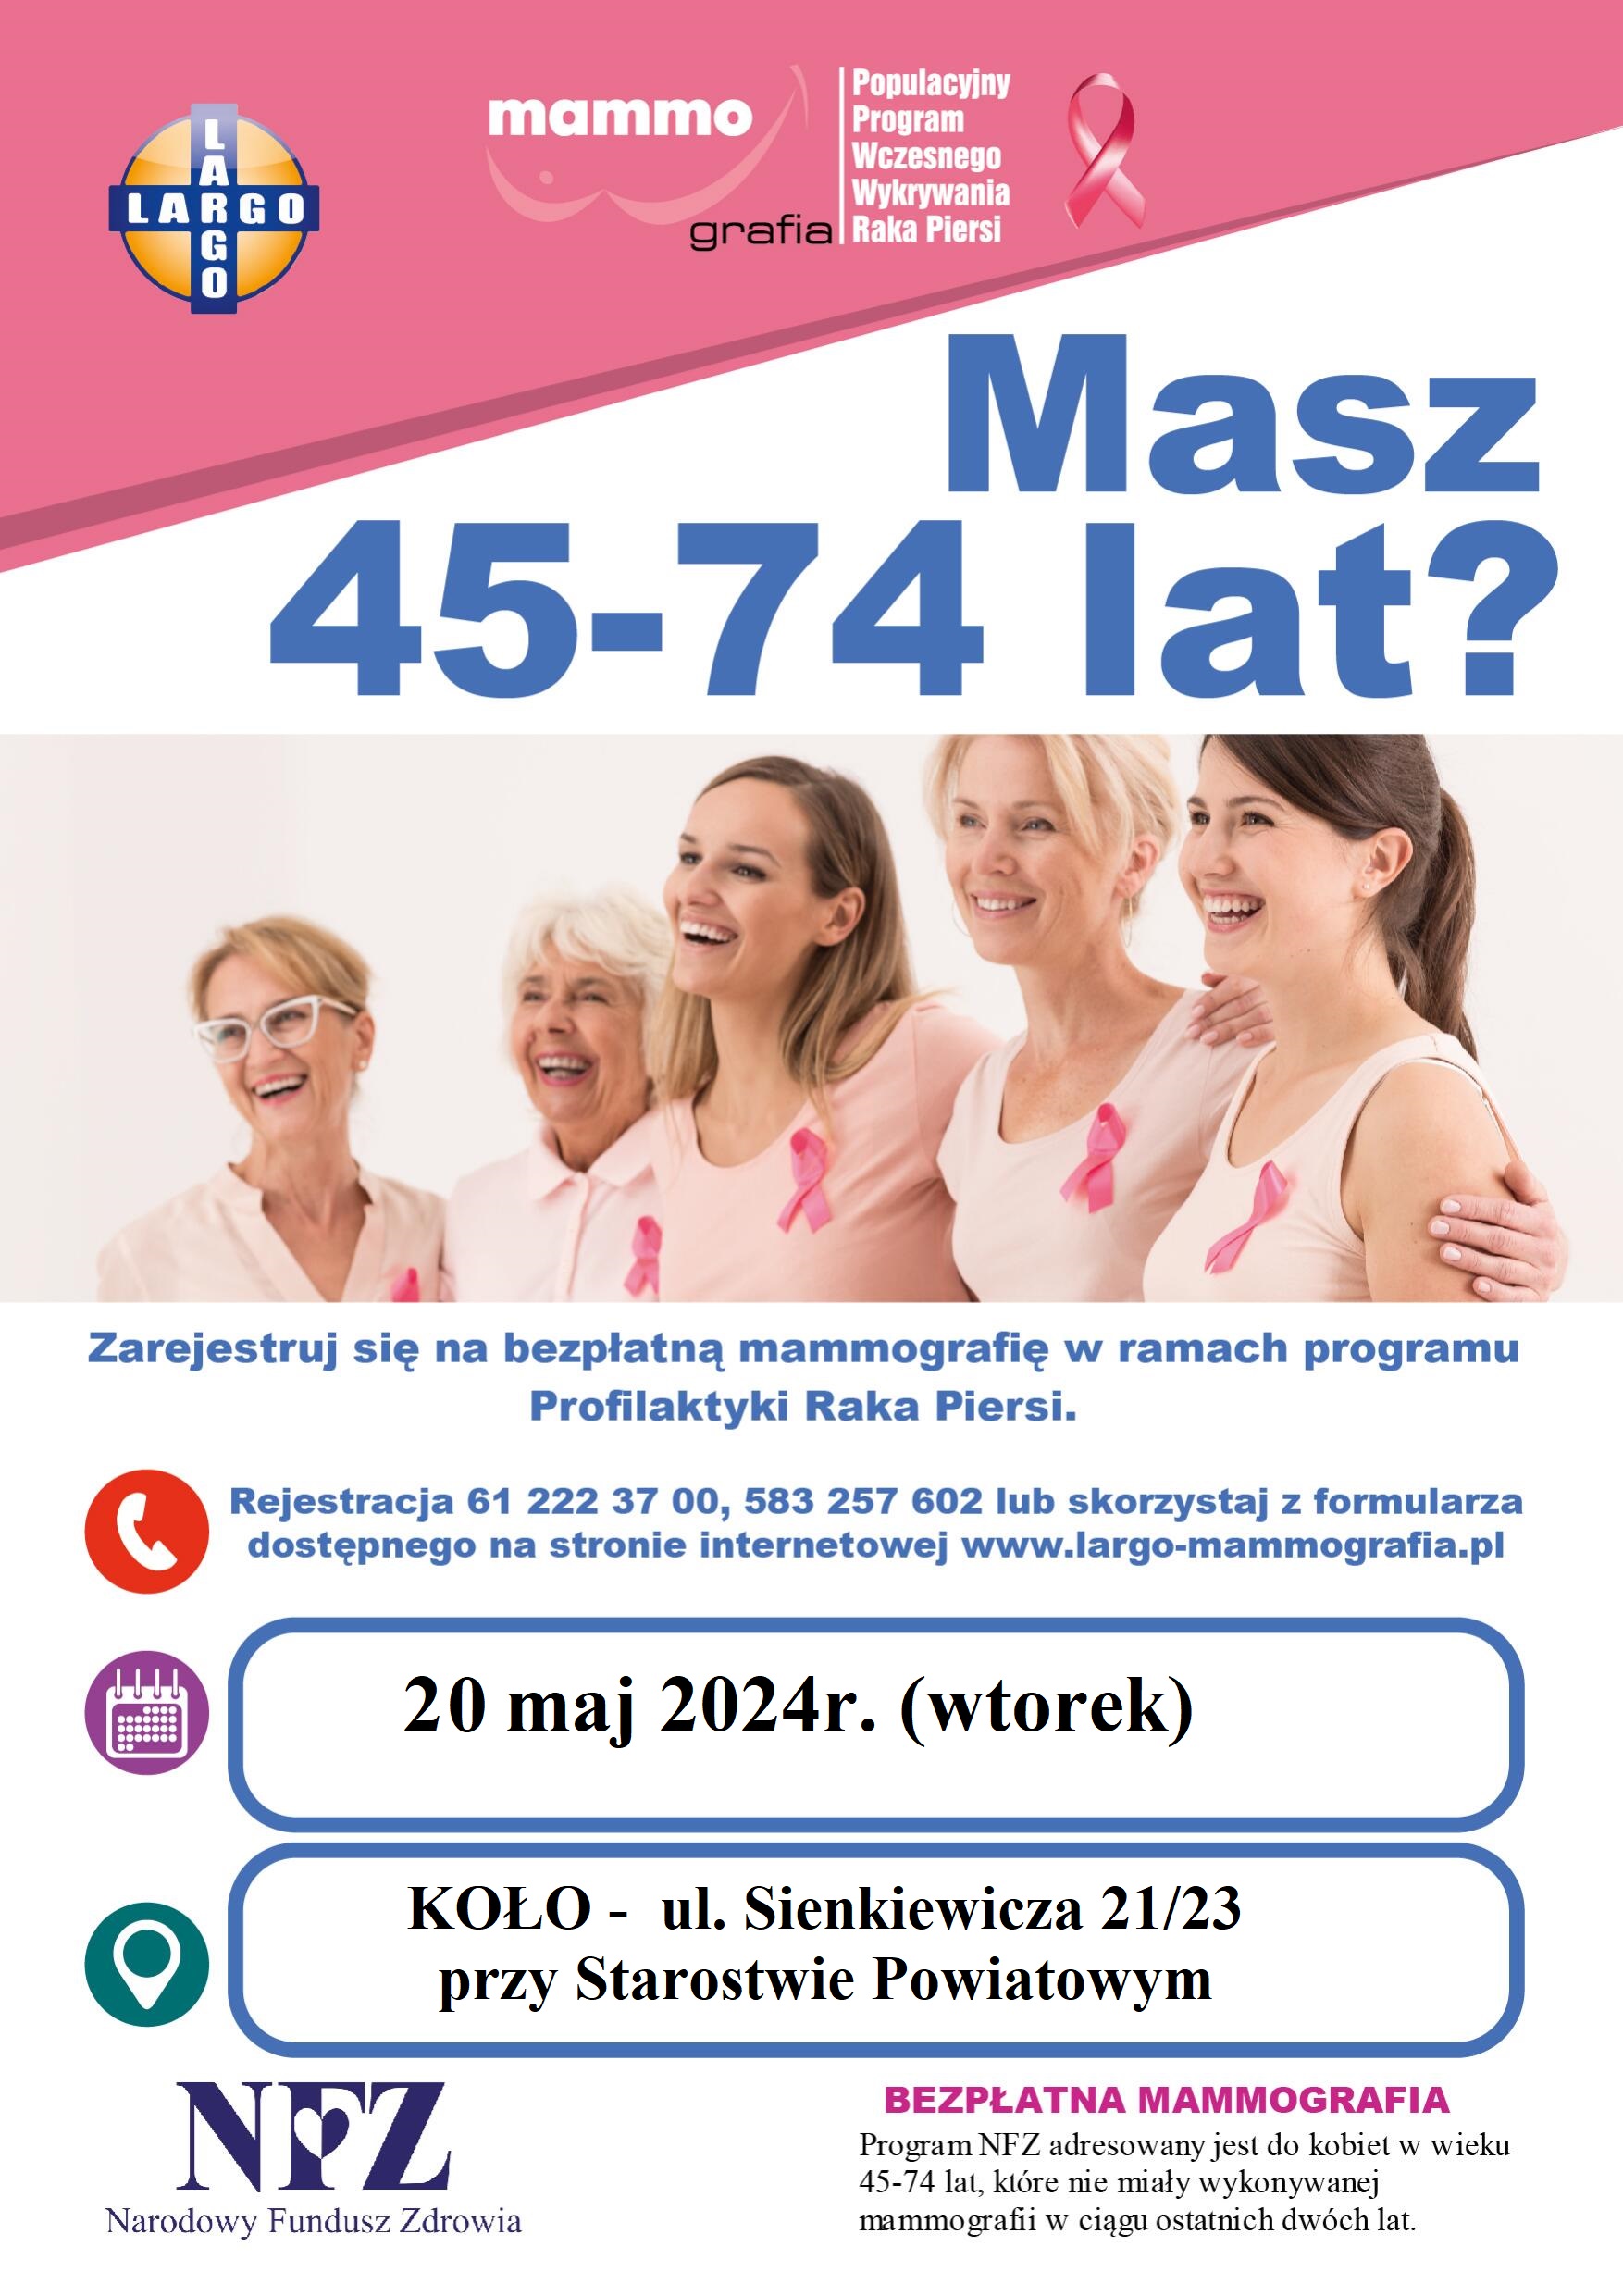 Bezpłatne badanie mammograficzne 